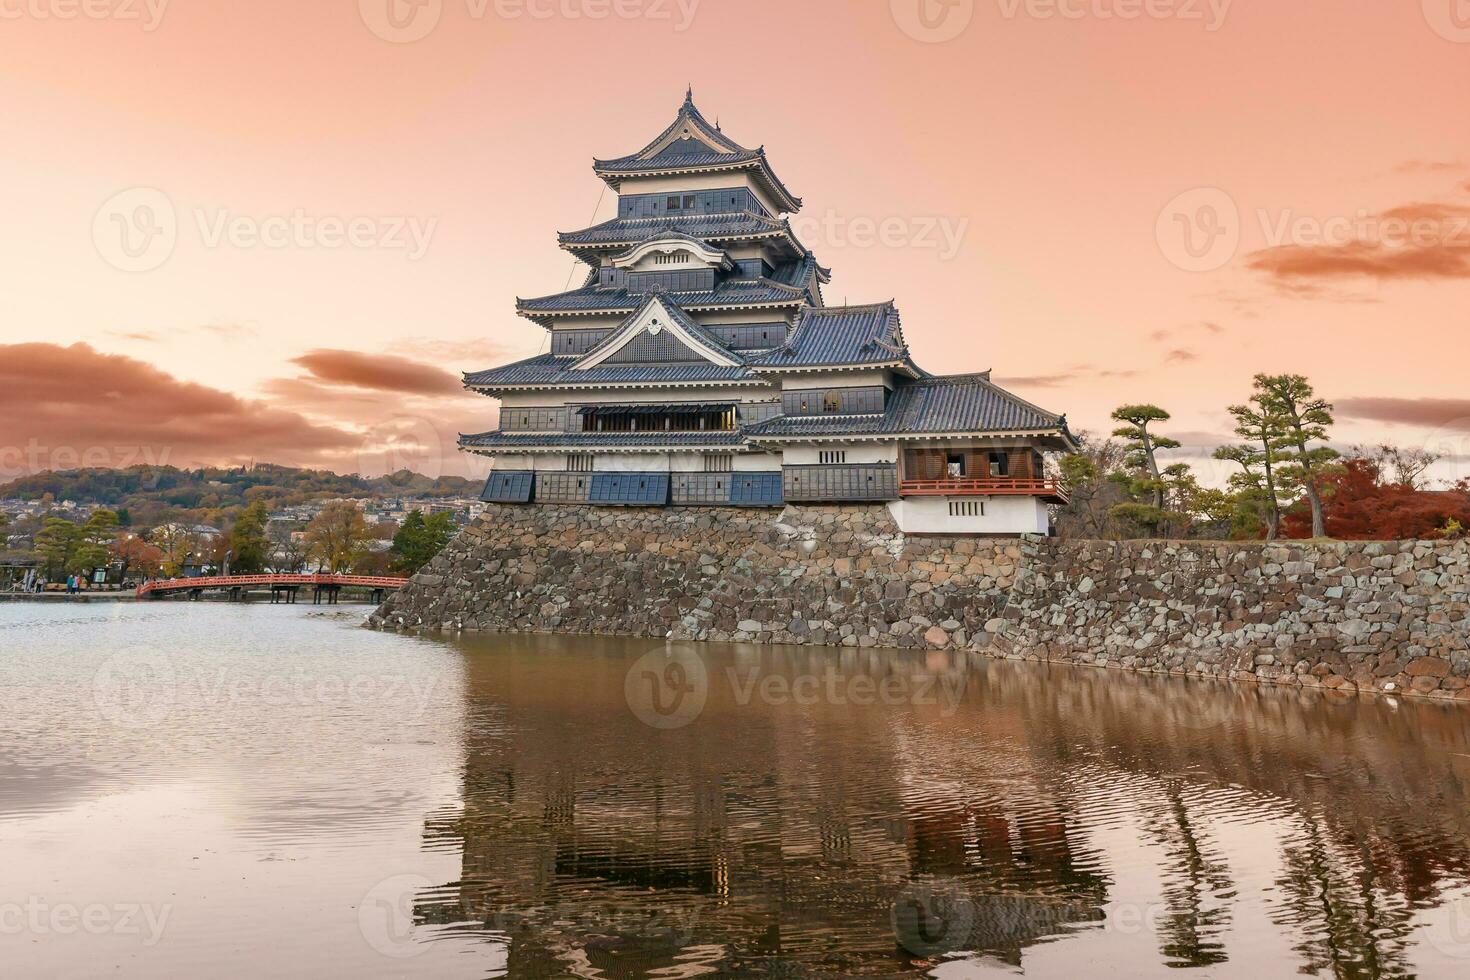 matsumoto castillo o cuervo castillo en otoño, es uno de japonés primer ministro histórico castillos en oriental honshu. punto de referencia y popular para turistas atracción en matsumoto ciudad, nagano prefectura, Japón foto